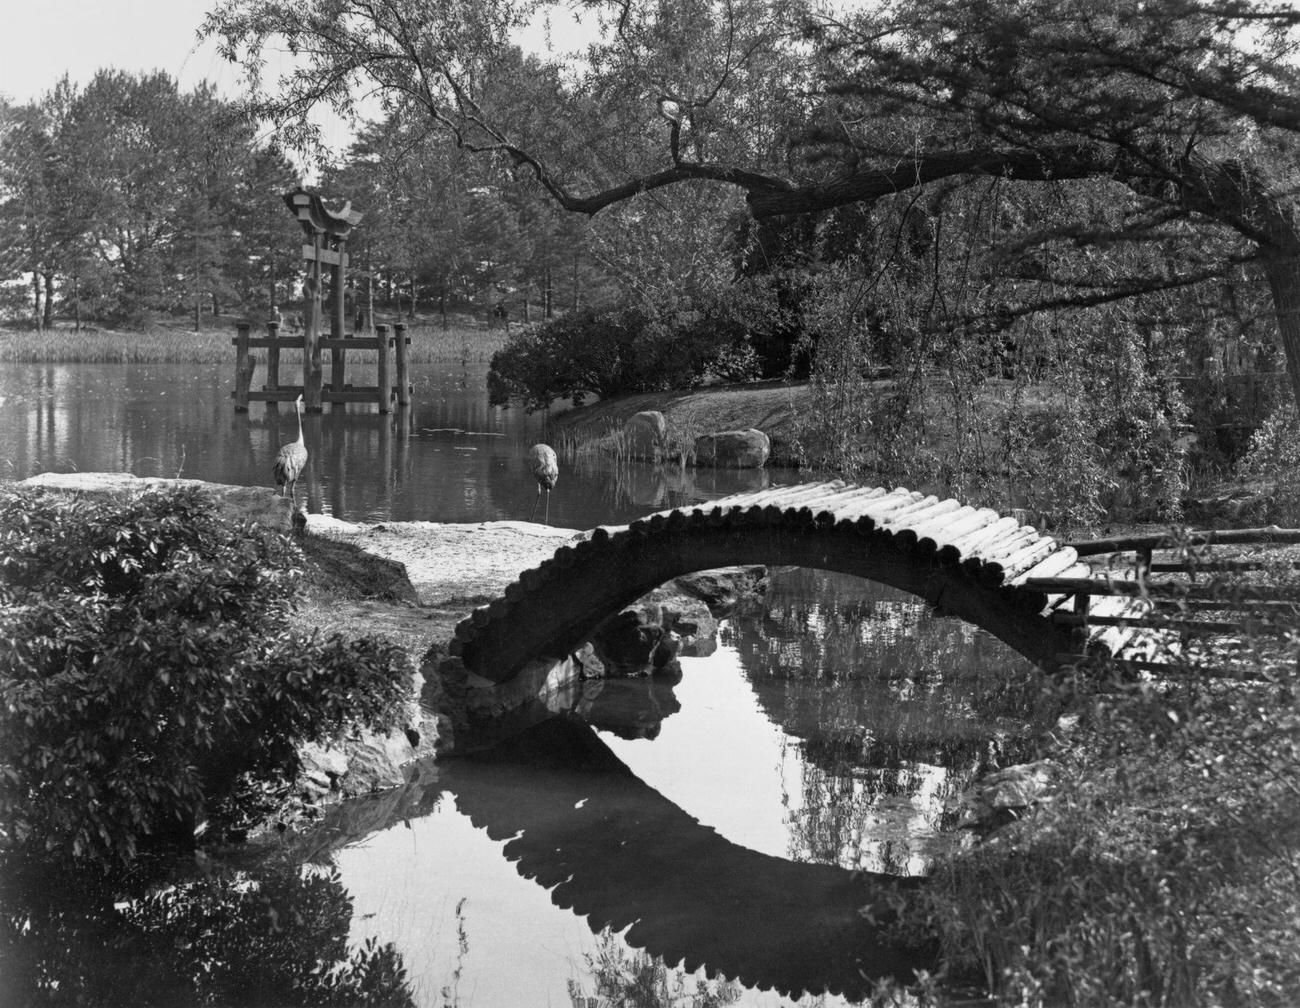 Drum Bridge In Brooklyn Botanic Garden, 1932